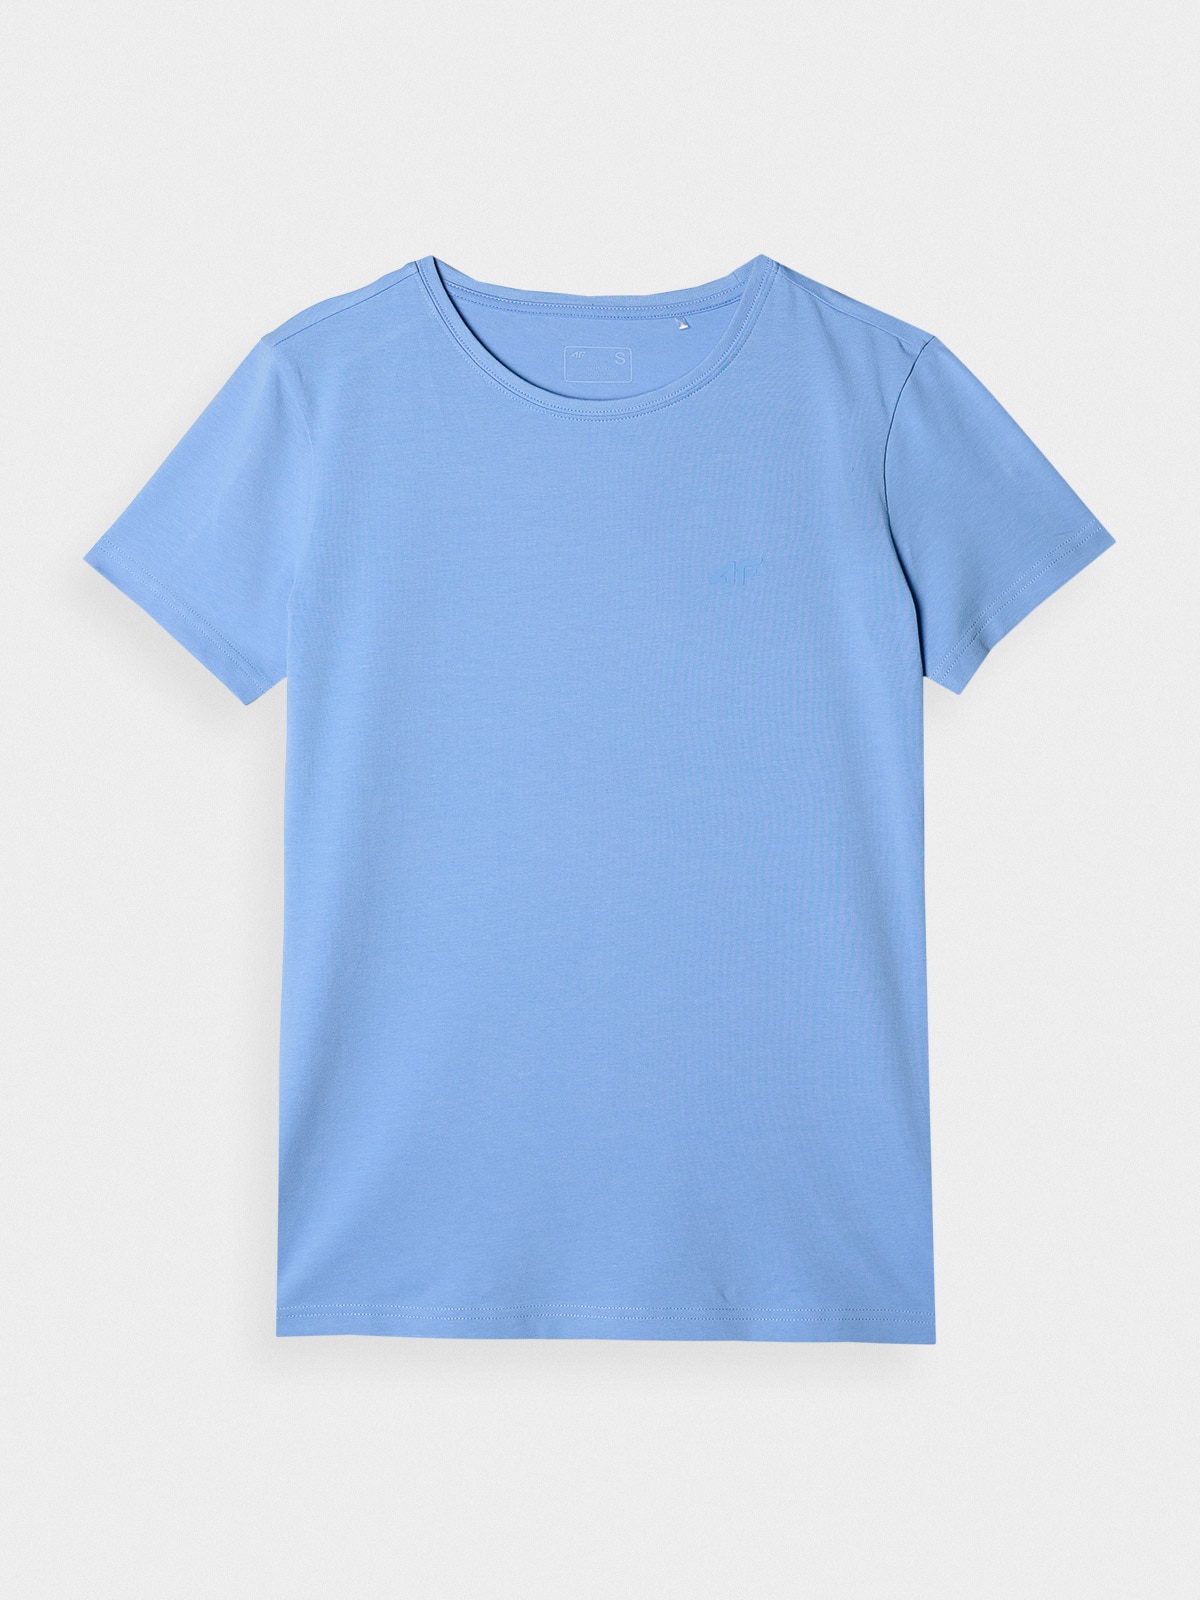 Dámské hladké tričko slim - tmavě modré